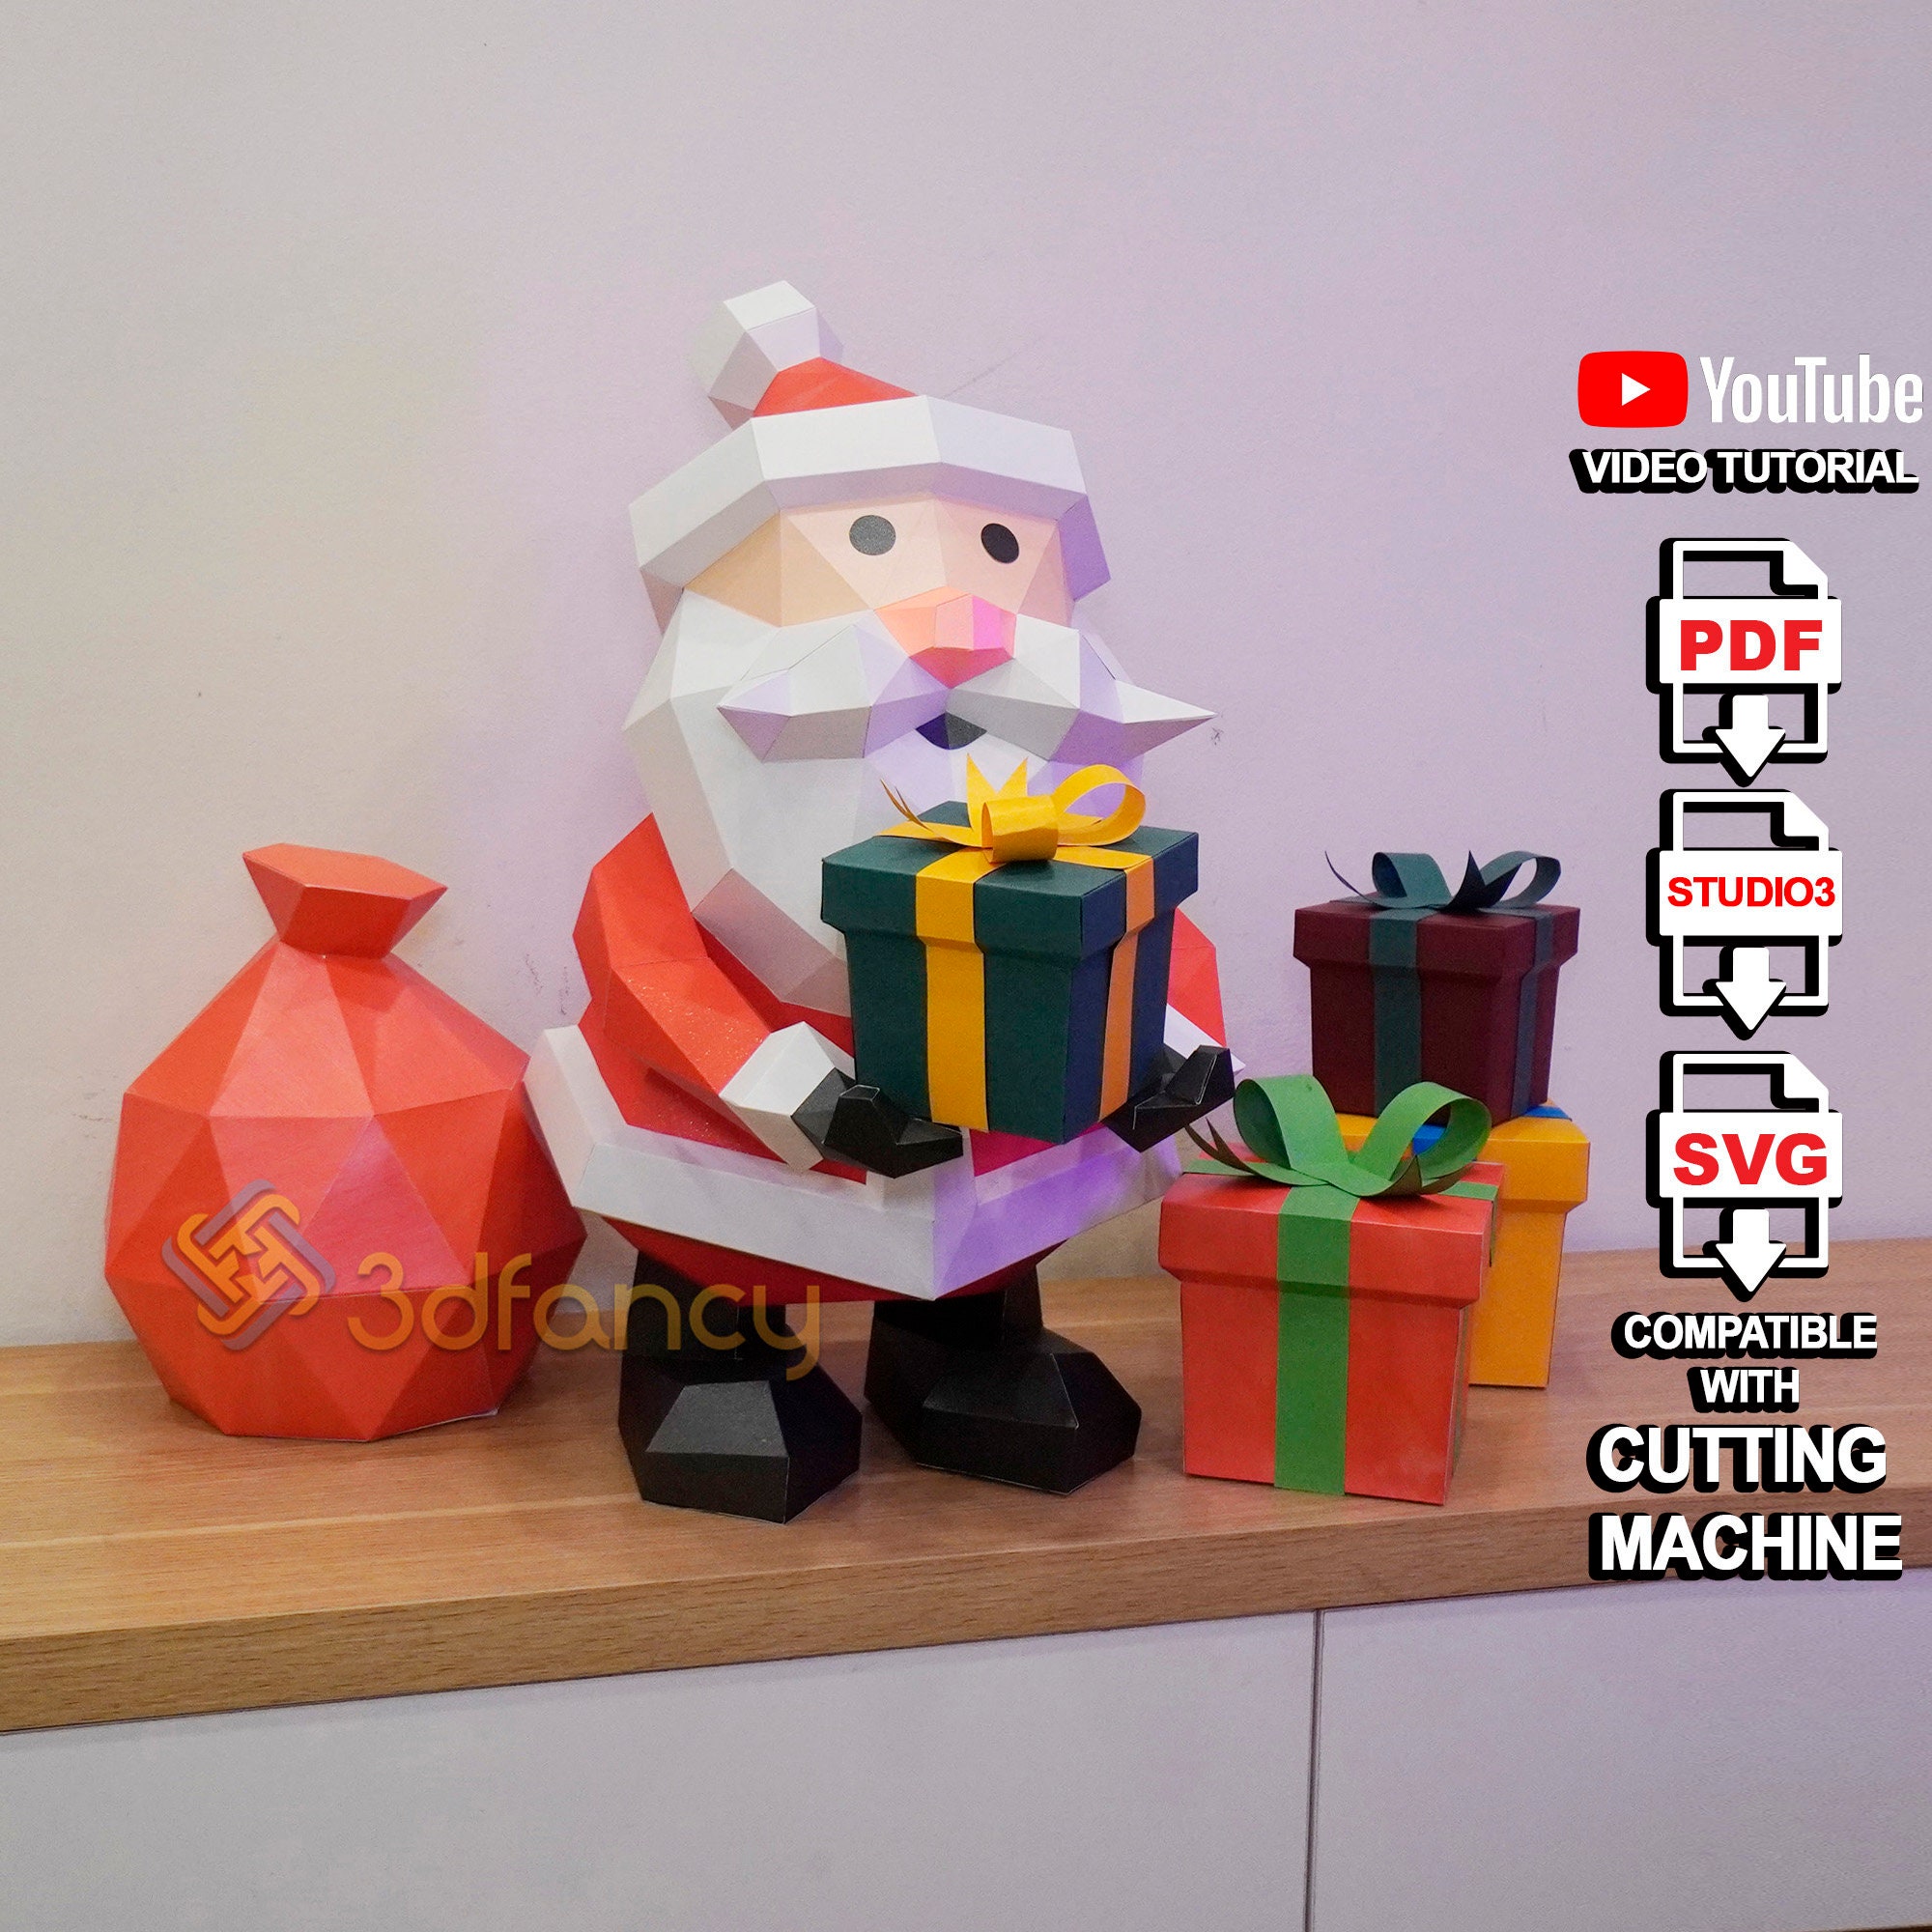 Santa Claus Manual Activities Card DIY Christmas Card Material 3D Greeting  Cards